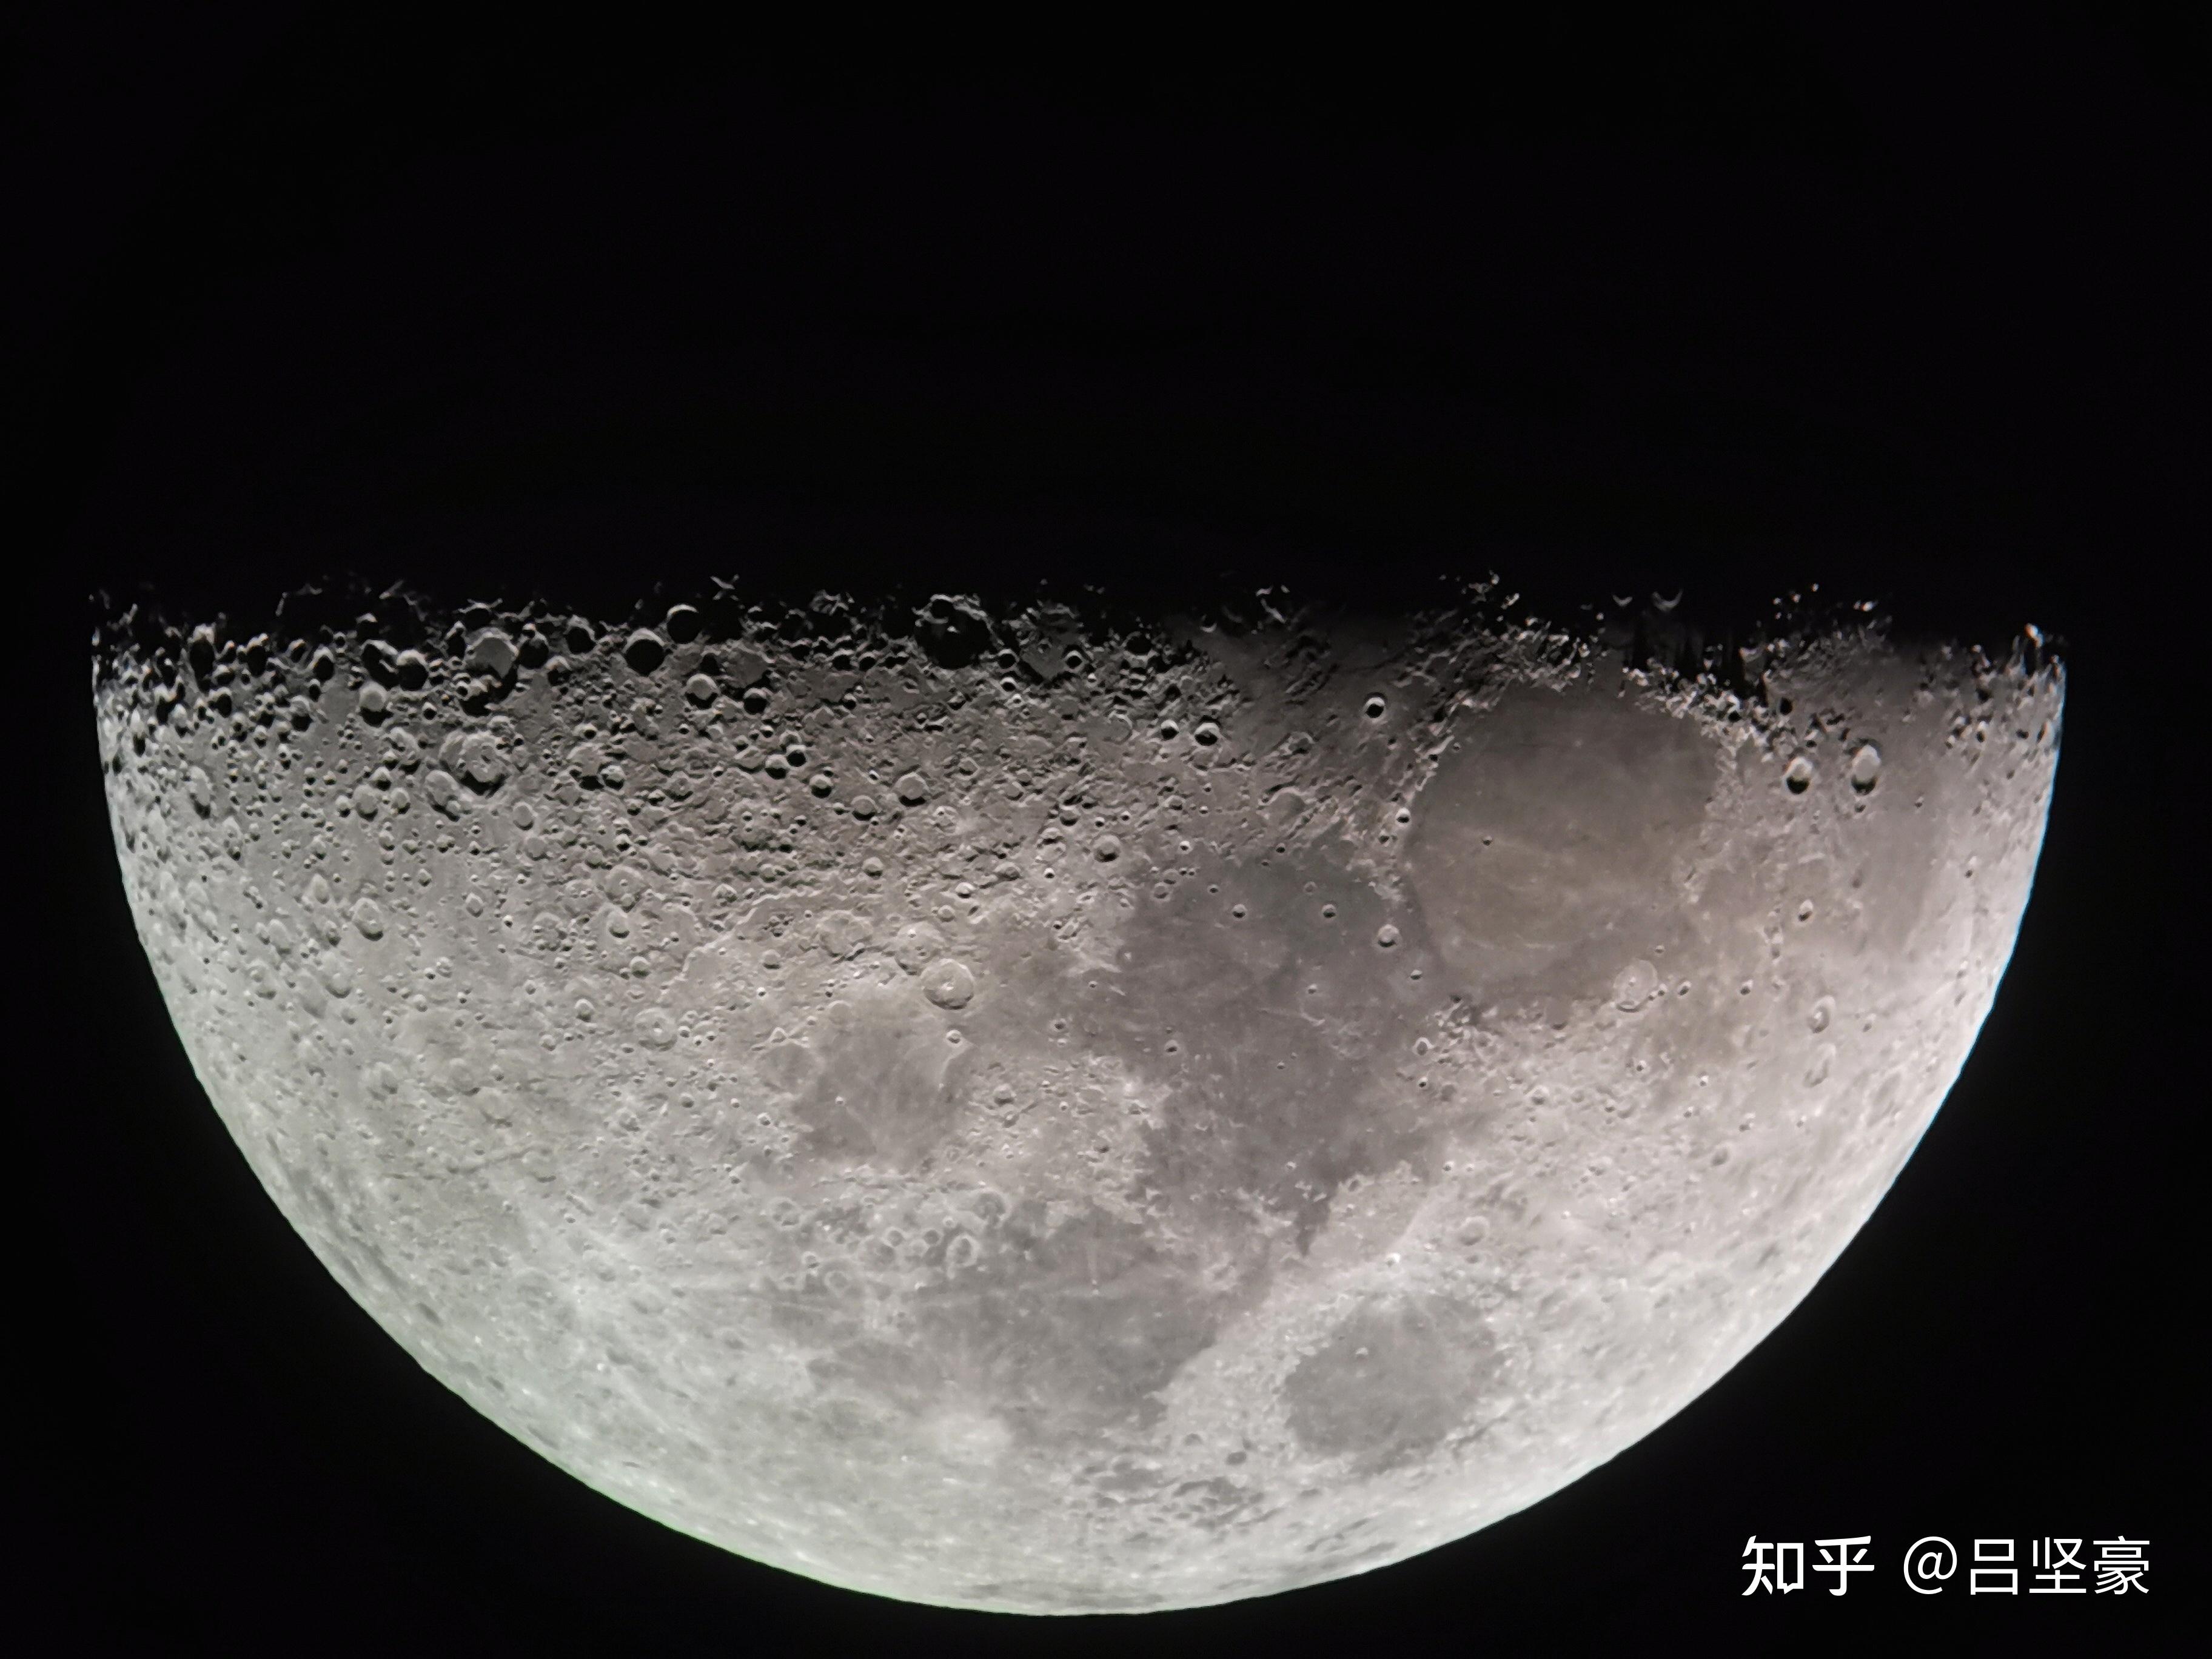 夜景拍摄月亮_如何拍摄大月亮_三星拍摄月亮或造假